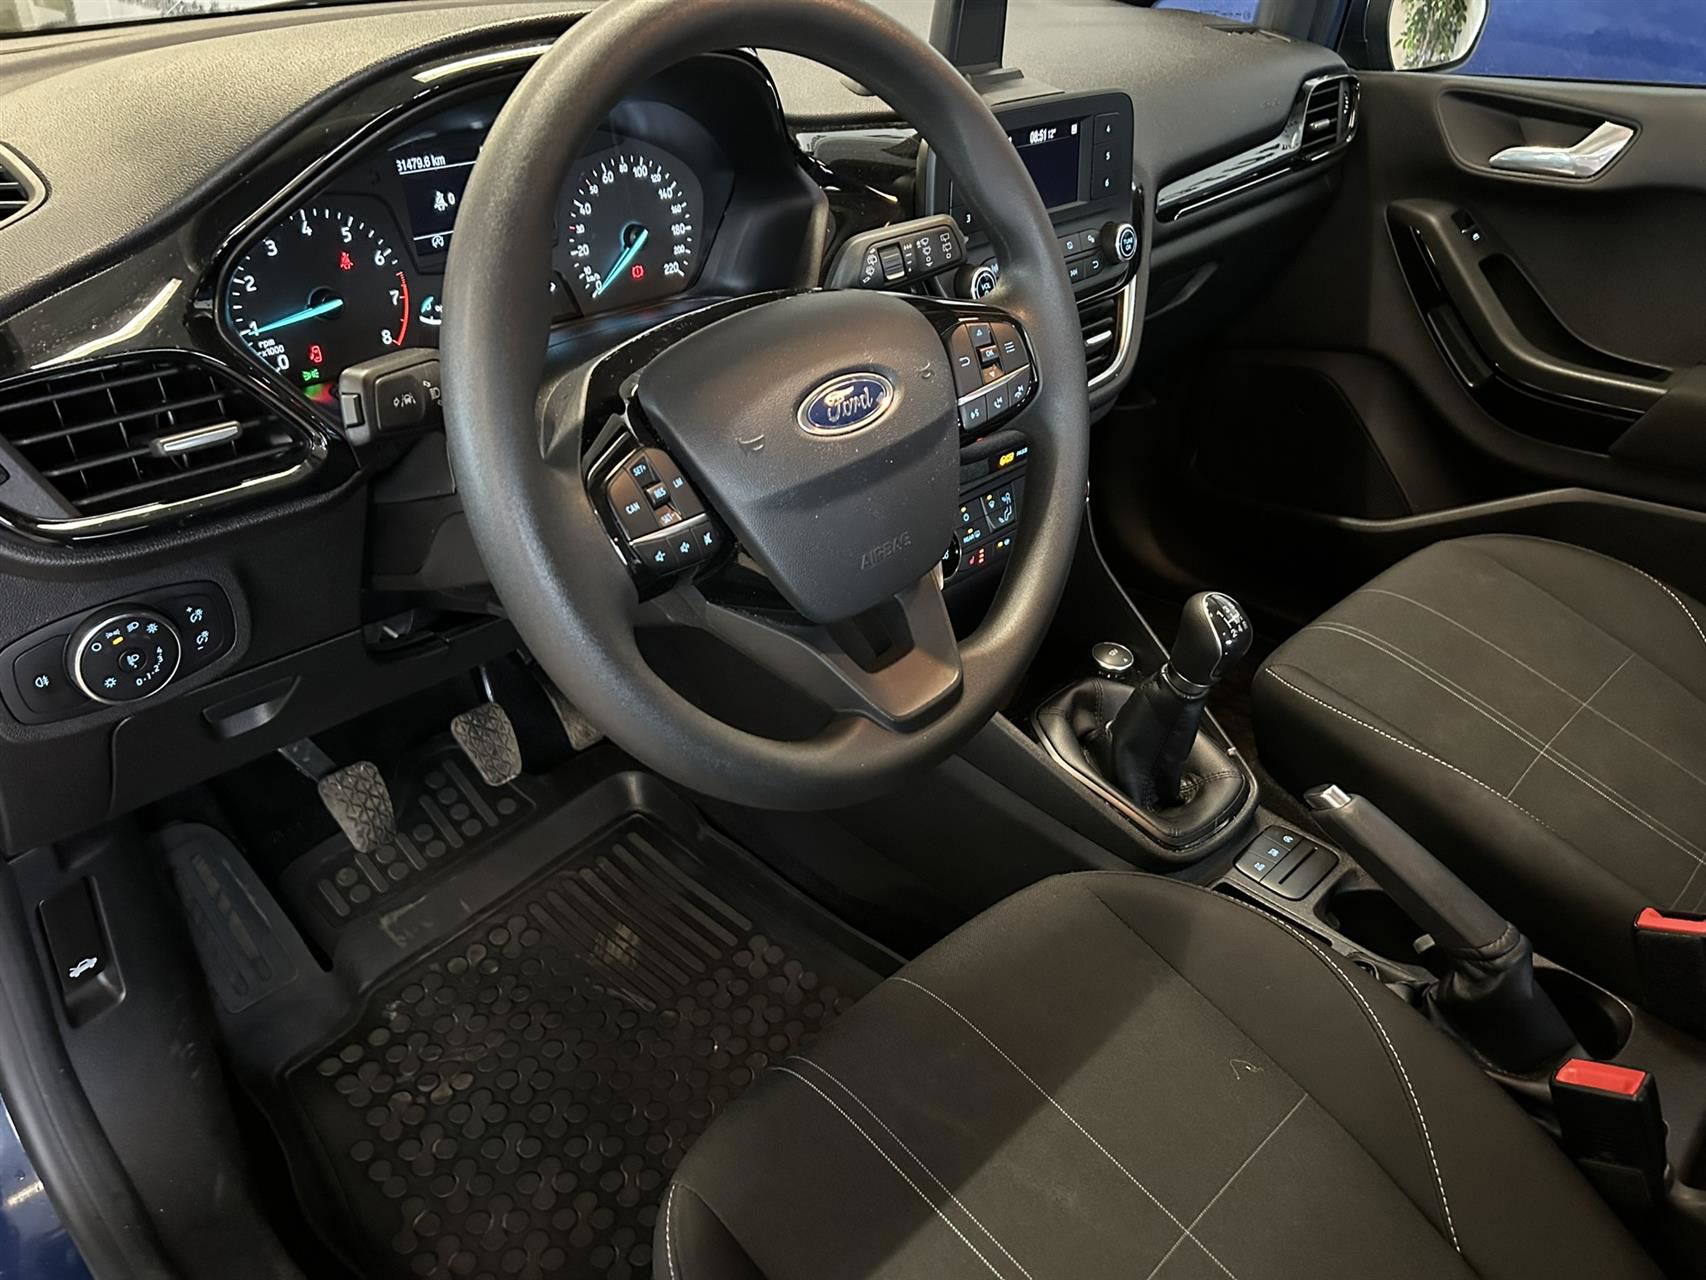 Billede af Ford Fiesta 1,1 Trend Start/Stop 85HK 5d